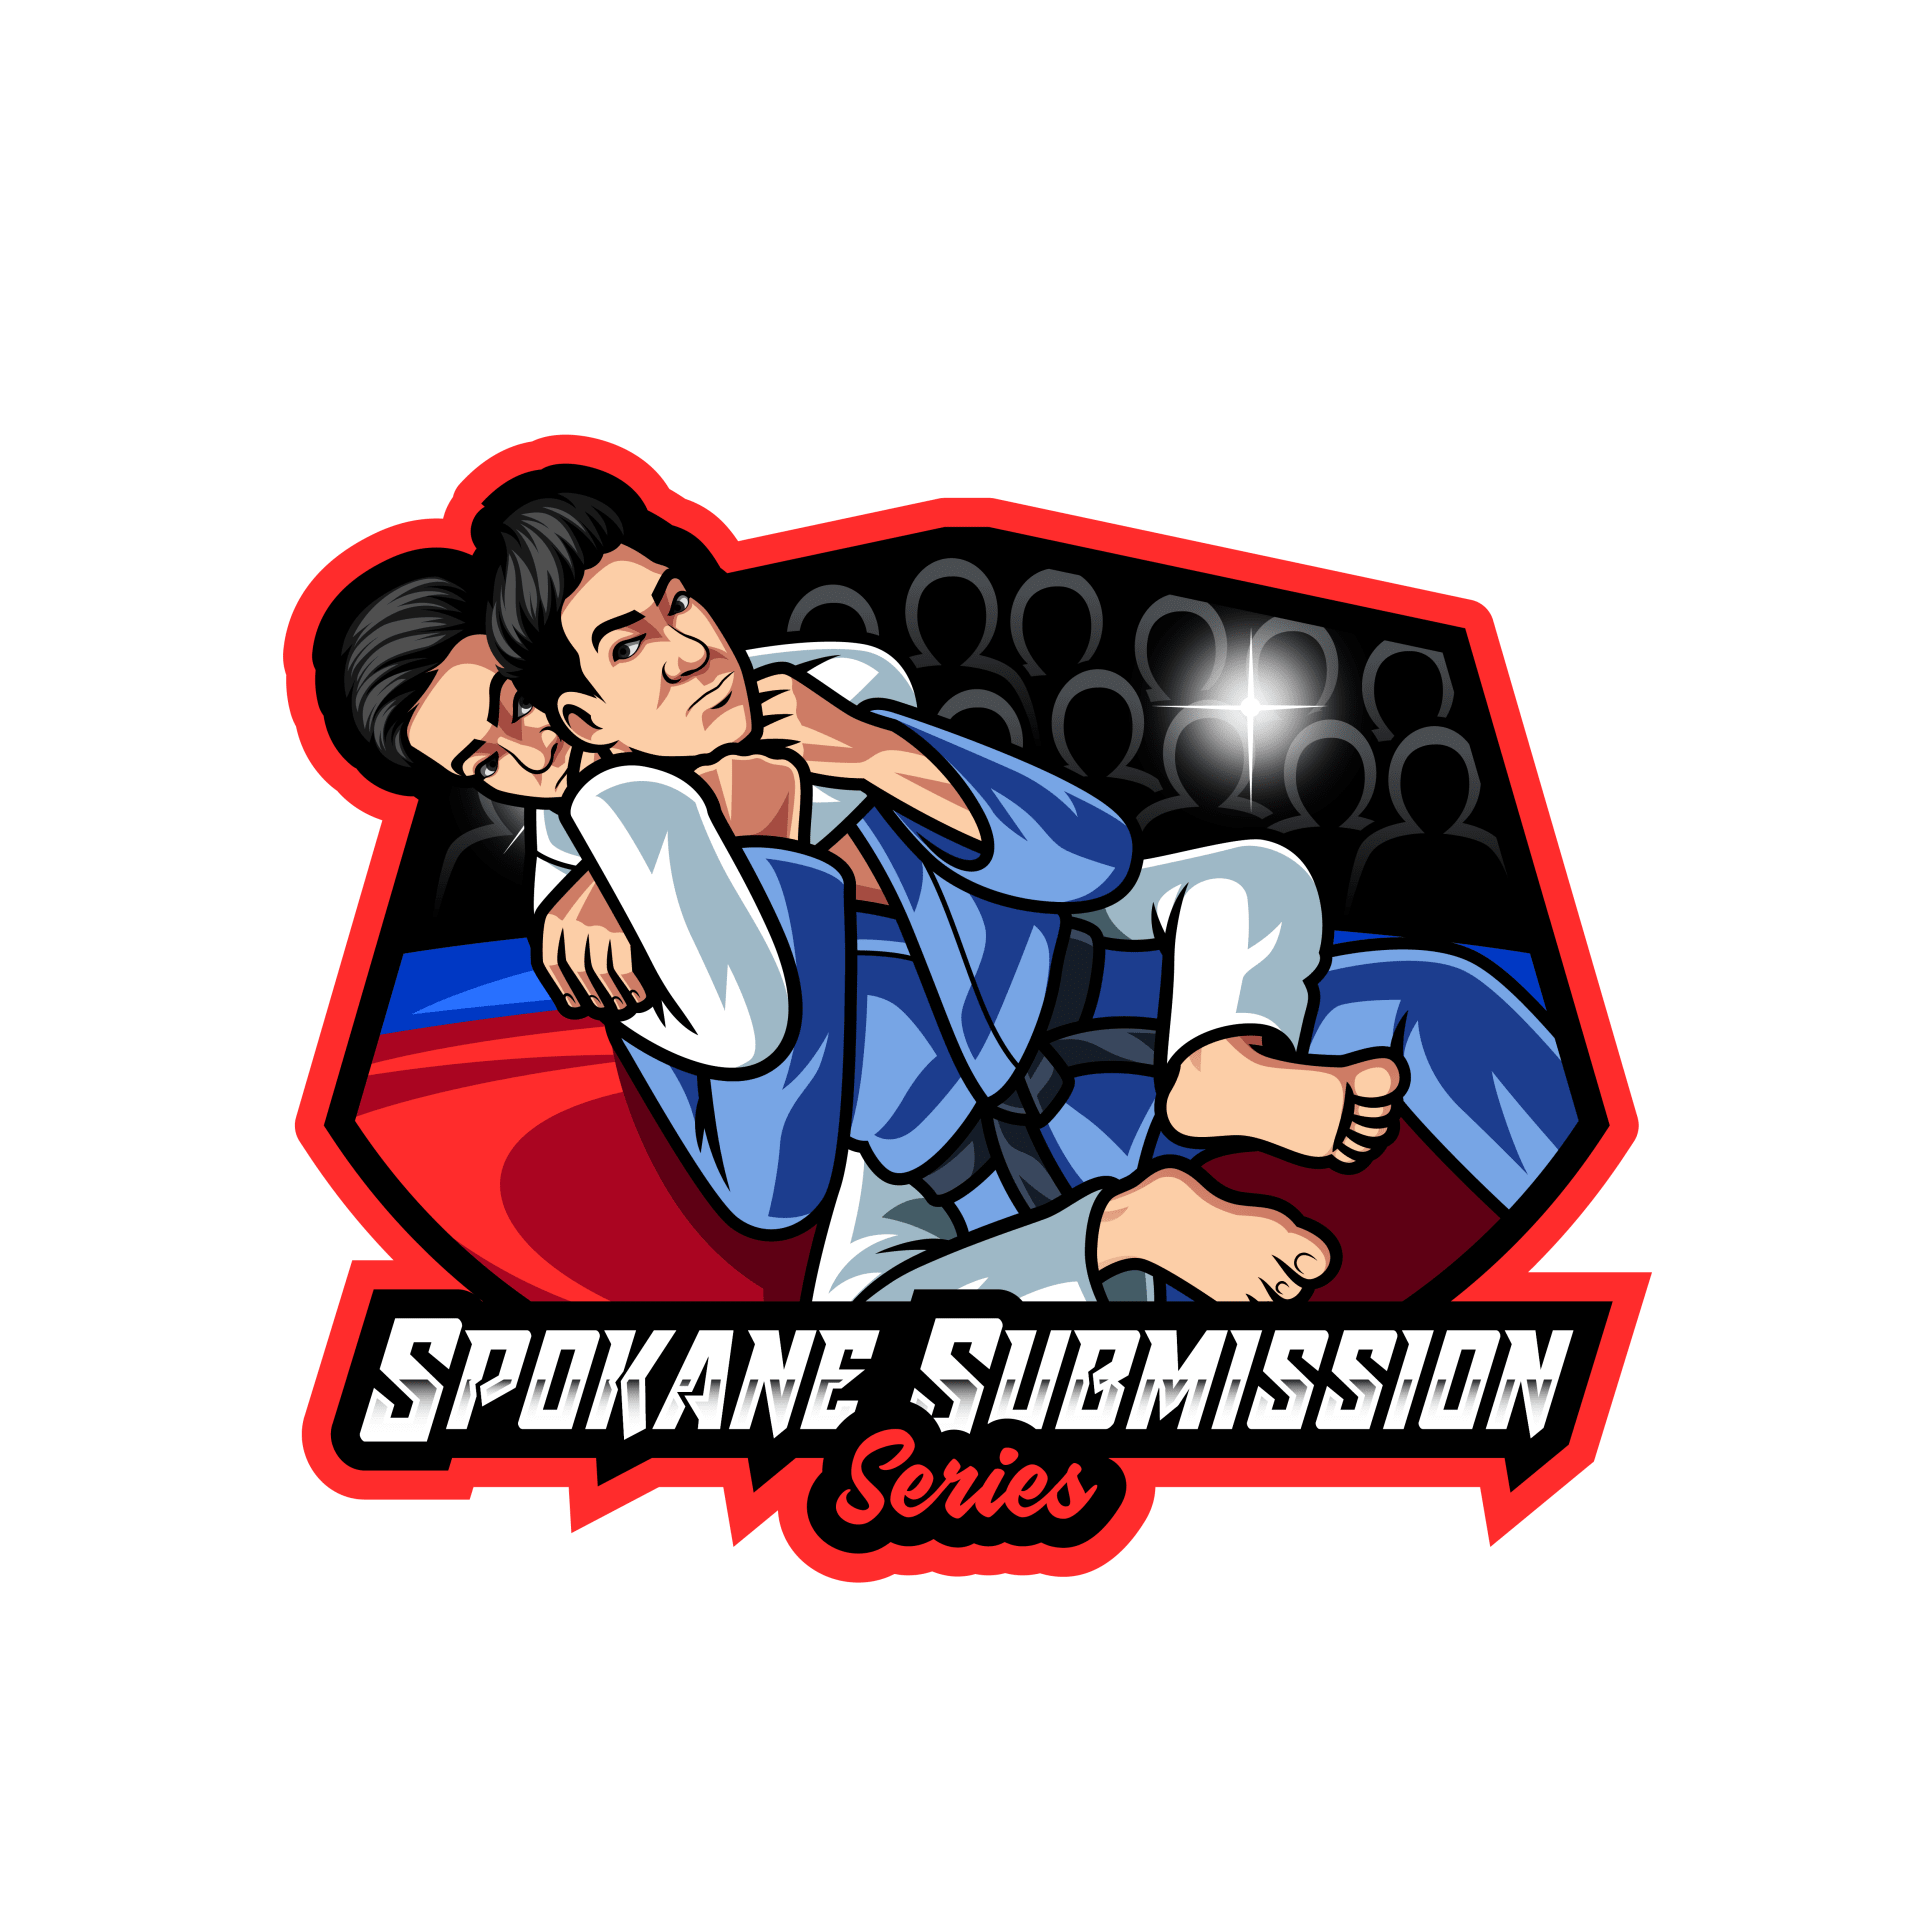 Spokane Submission Series